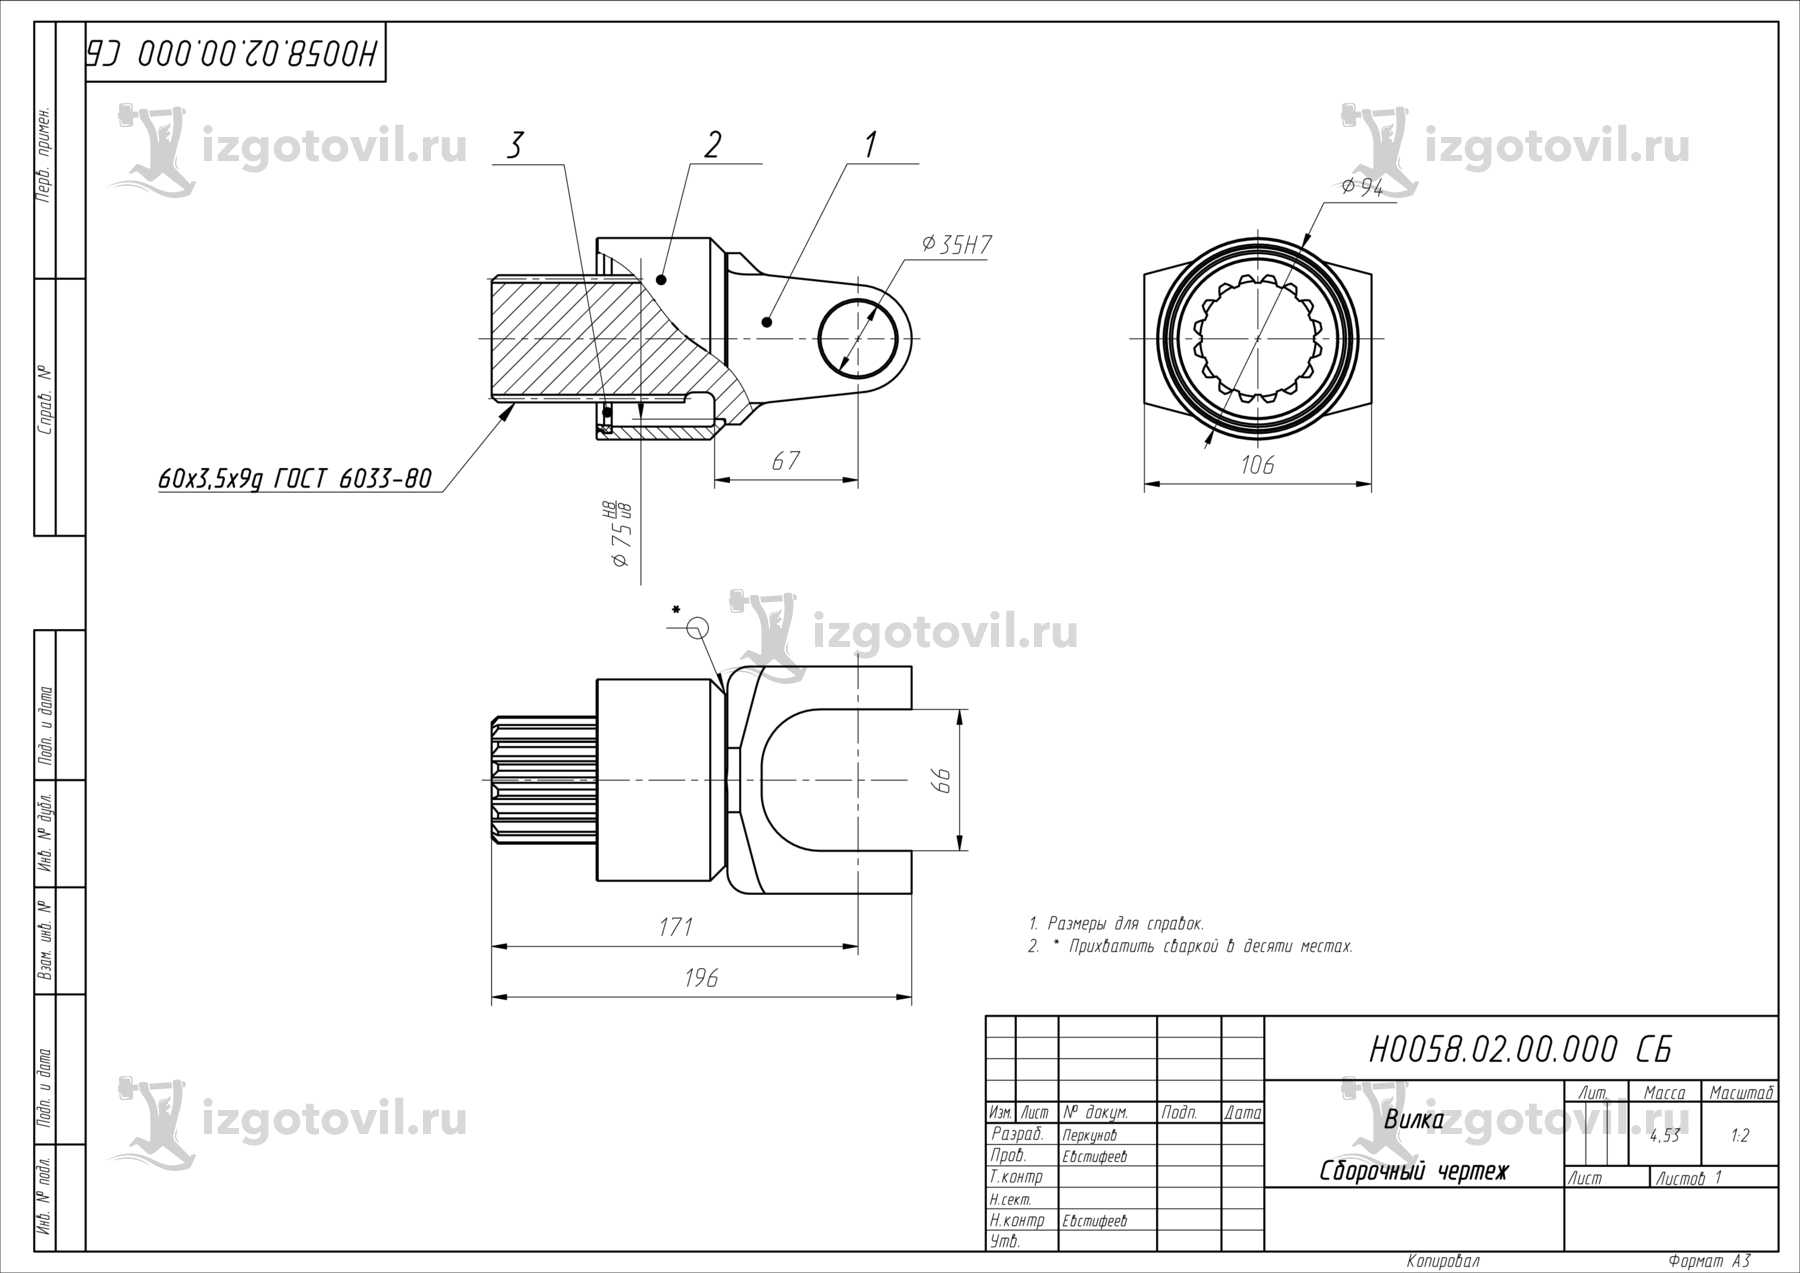 Изготовление деталей оборудования ( запасные части для замены на автоматической формовочной линии HWS:).